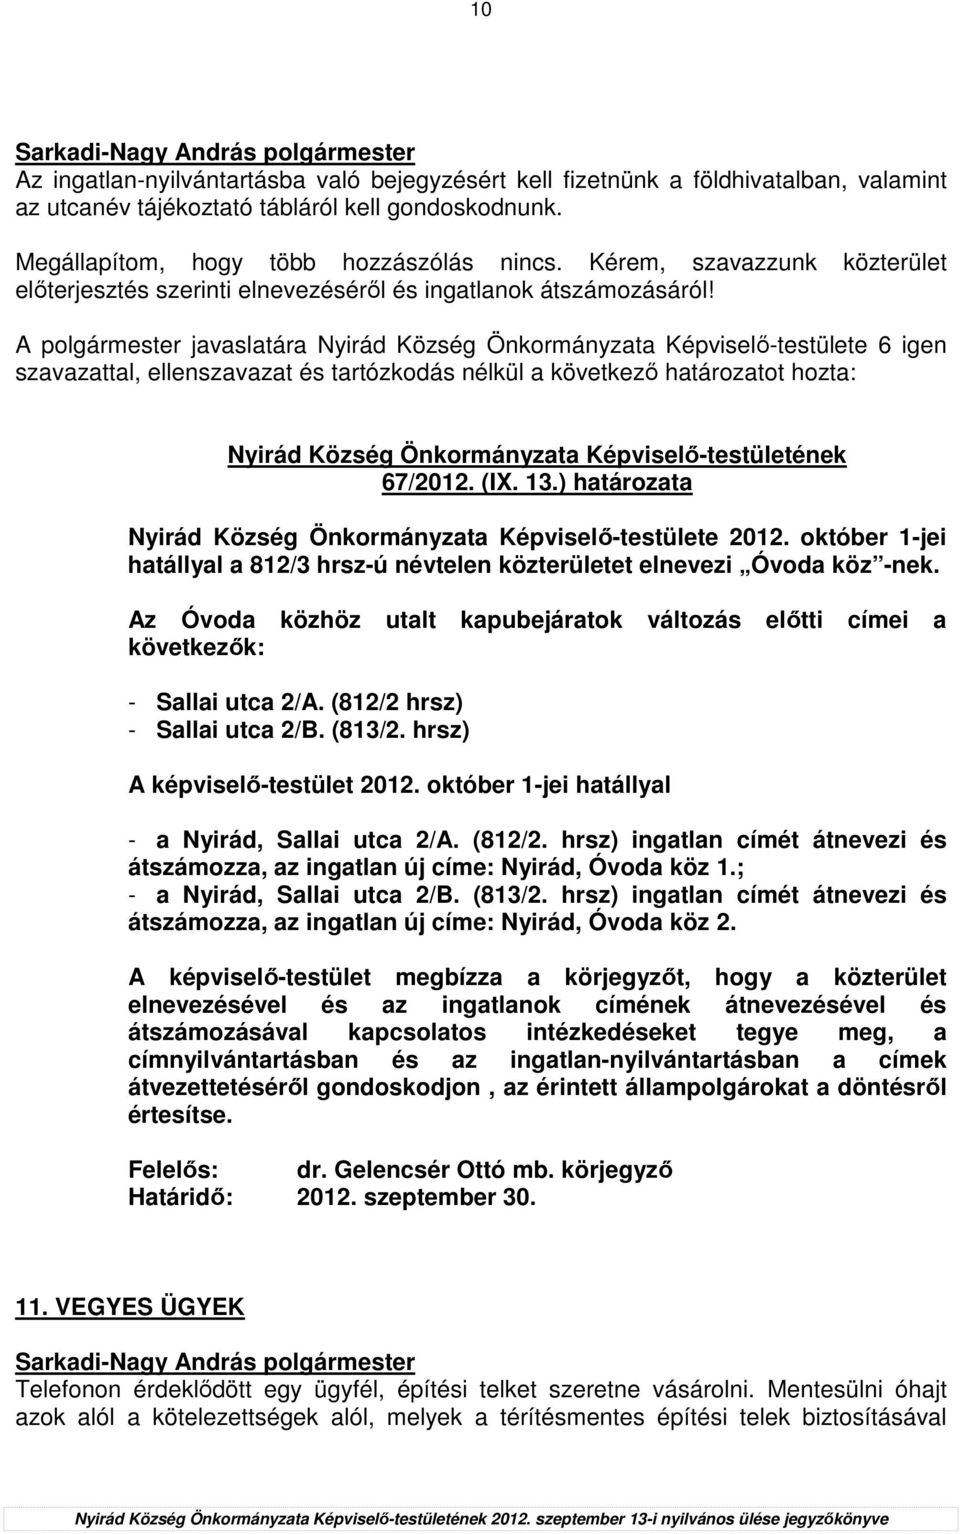 ) határozata Nyirád Község Önkormányzata Képviselı-testülete 2012. október 1-jei hatállyal a 812/3 hrsz-ú névtelen közterületet elnevezi Óvoda köz -nek.